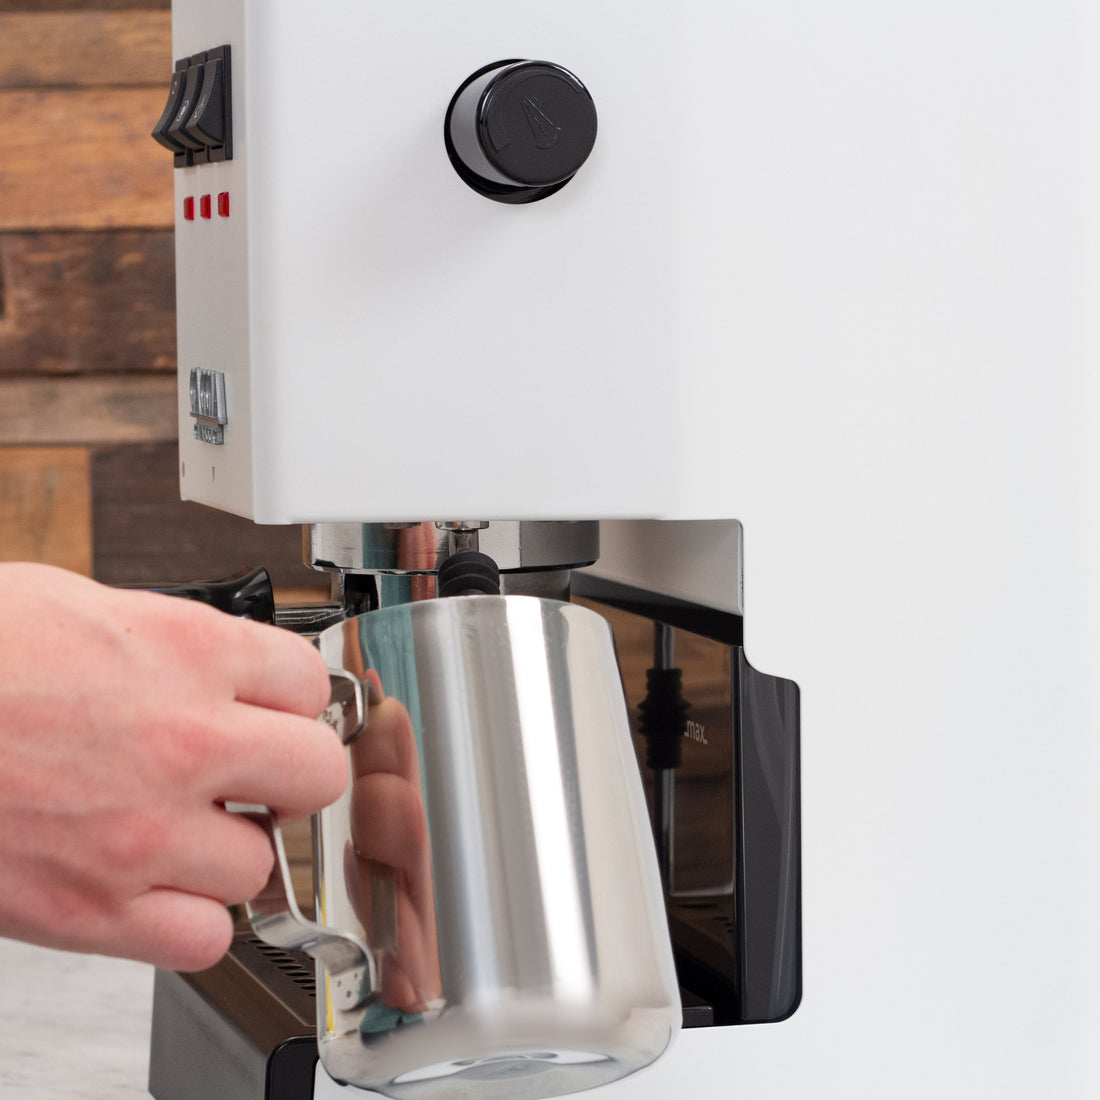 Gaggia Classic Evo Pro Espresso Machine in Polar White with Olive Wood